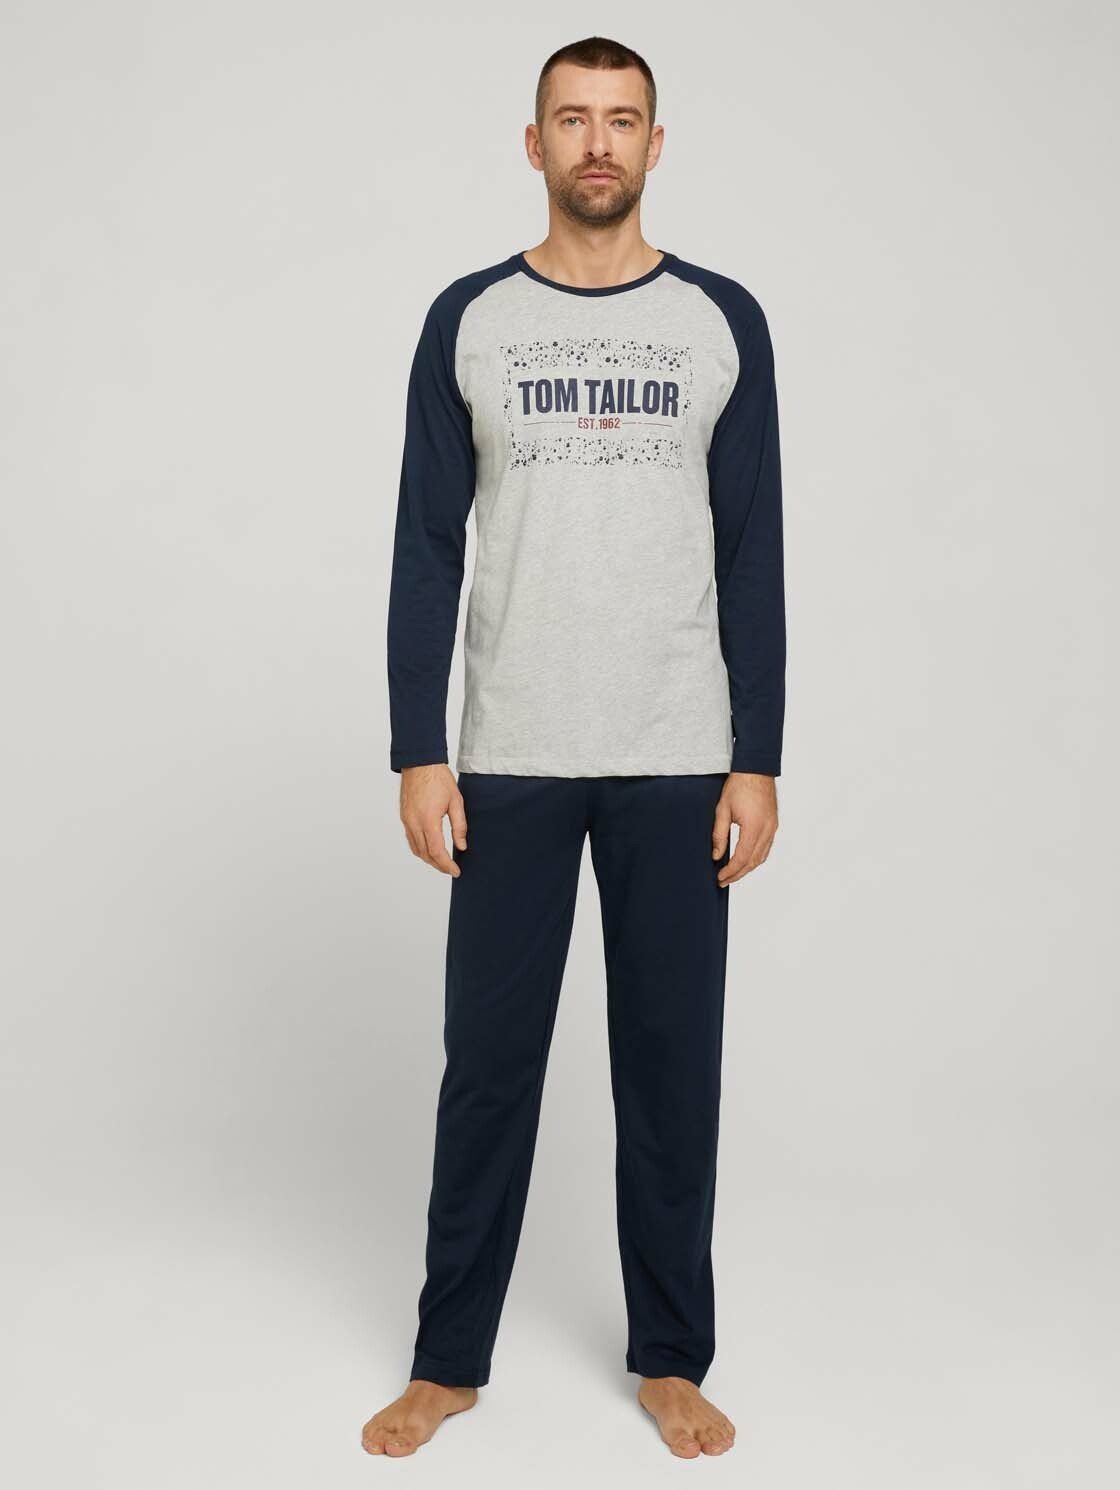 TOM TAILOR Schlafanzug »Langes Pyjama Set mit Print« online kaufen | OTTO